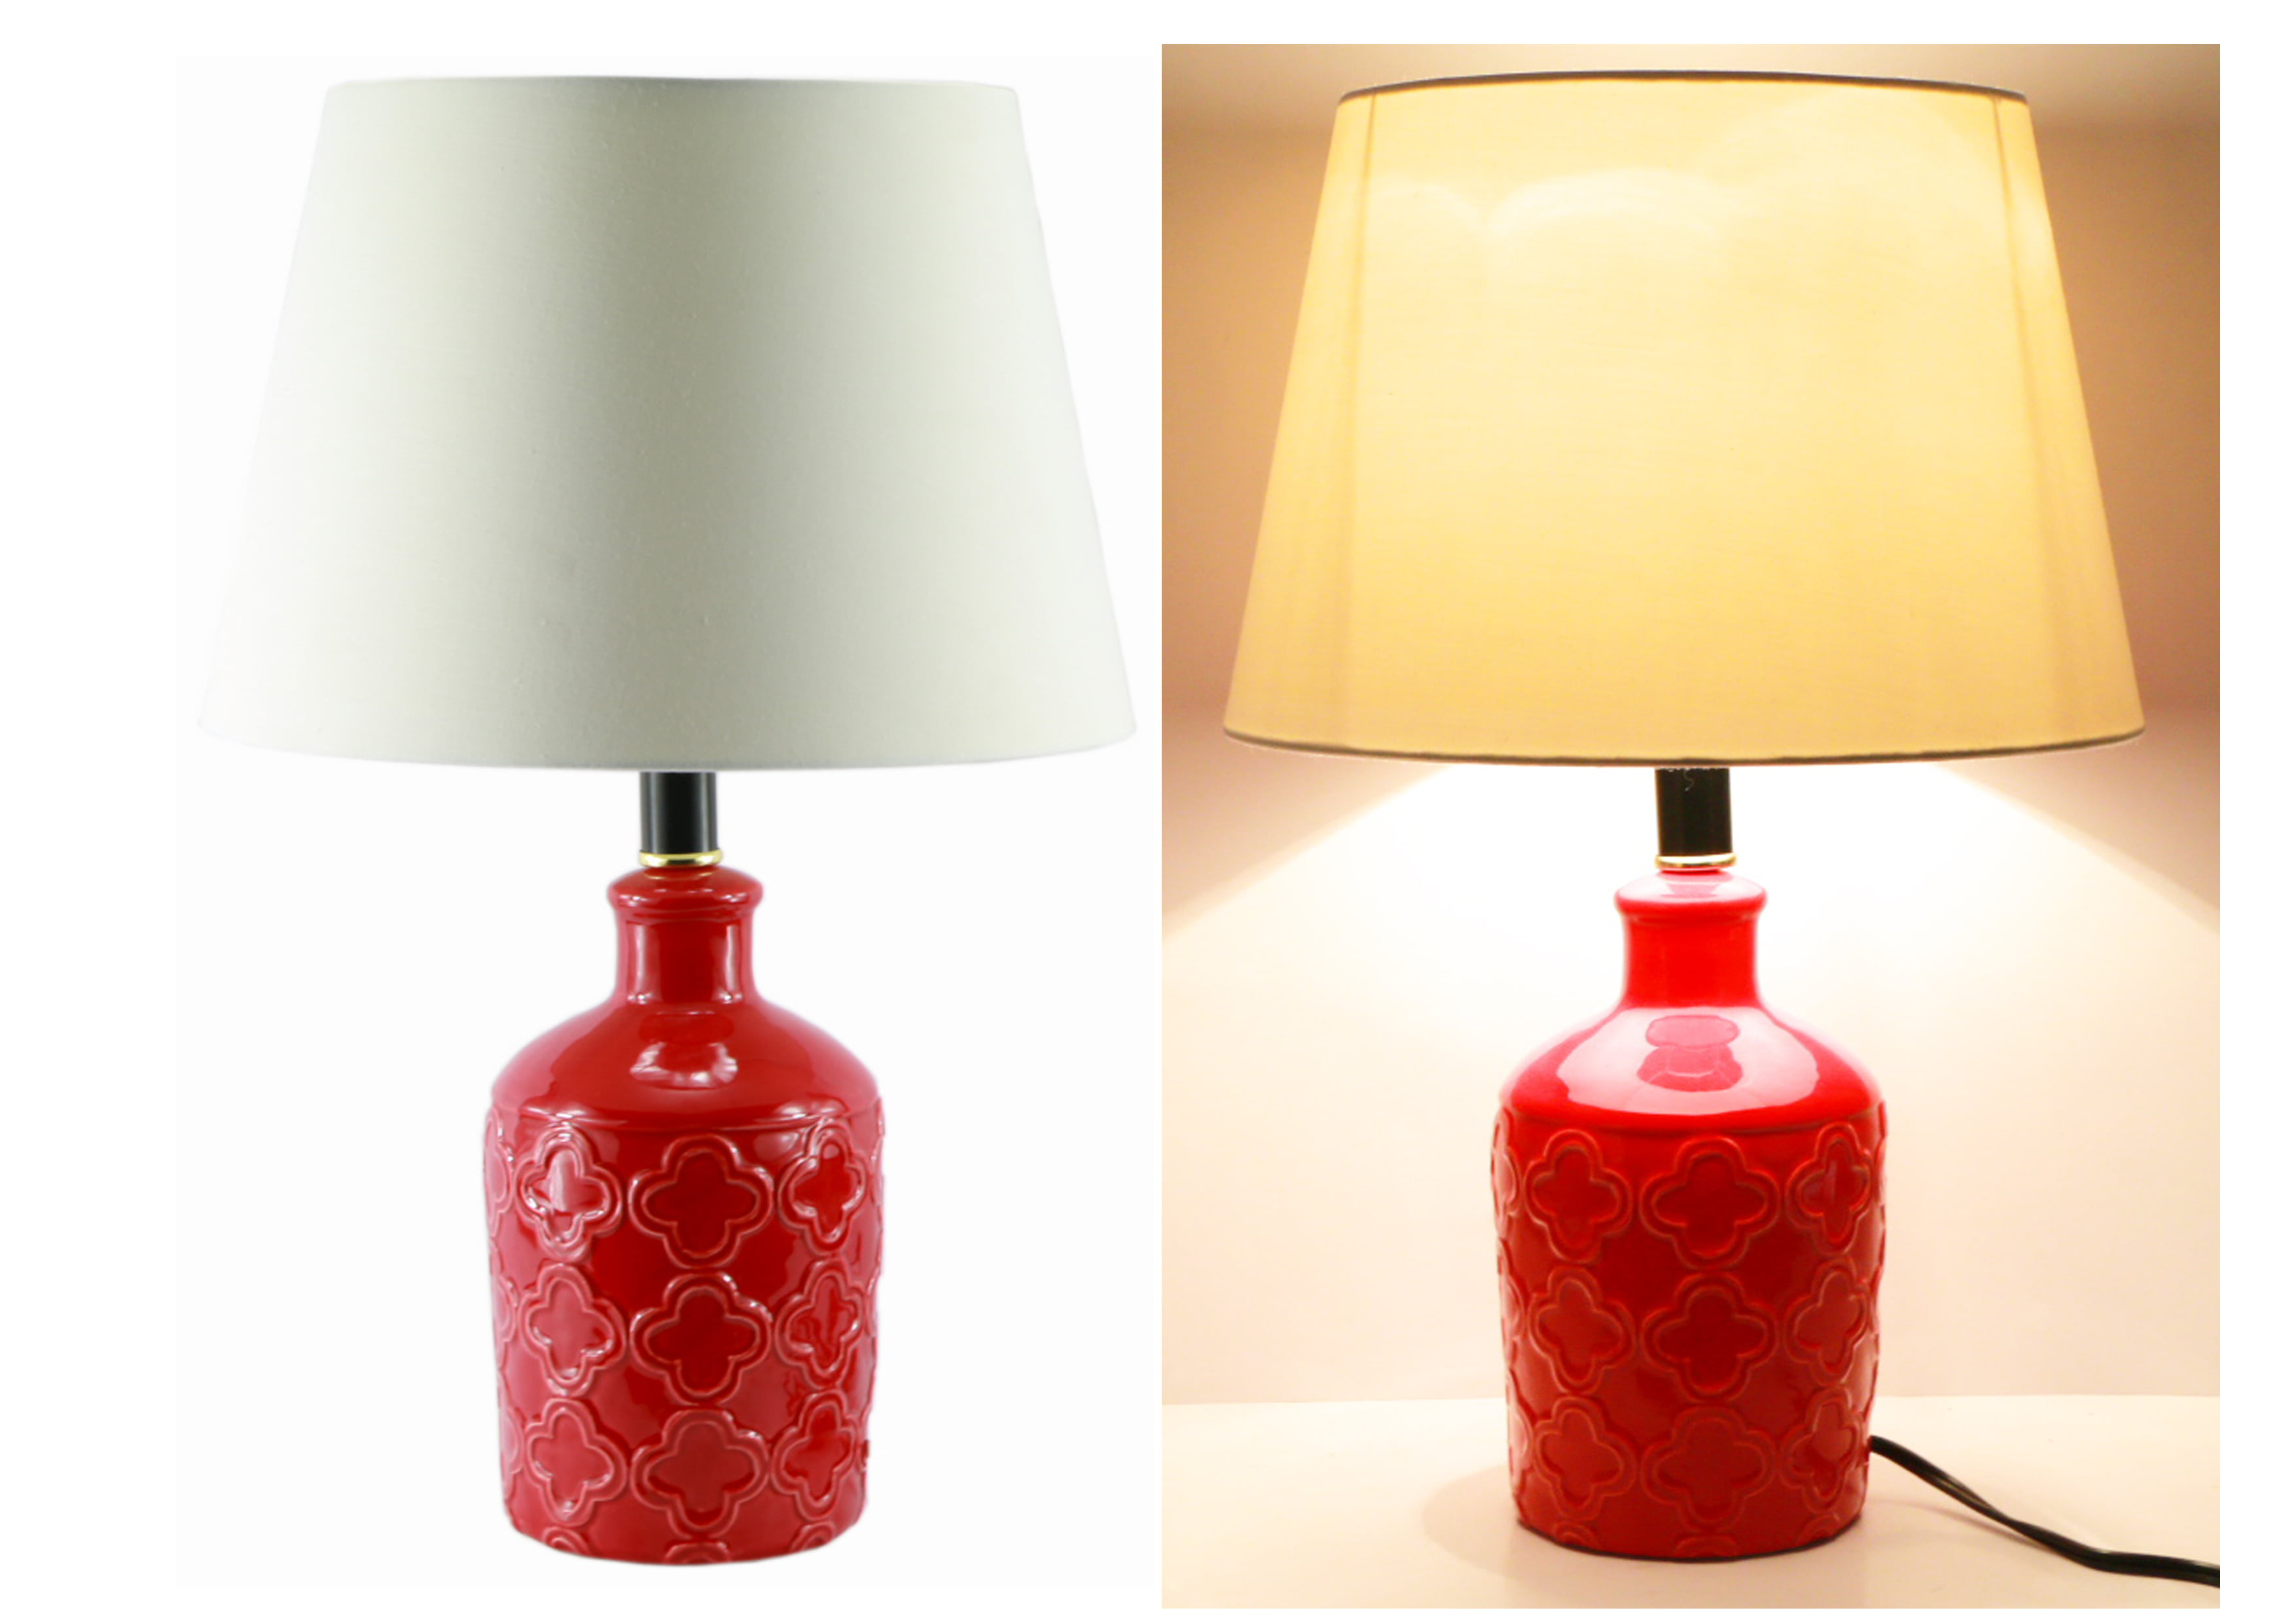 19 Red Ceramic Vase Table Lamp Bedroom Lamp Walmart Com